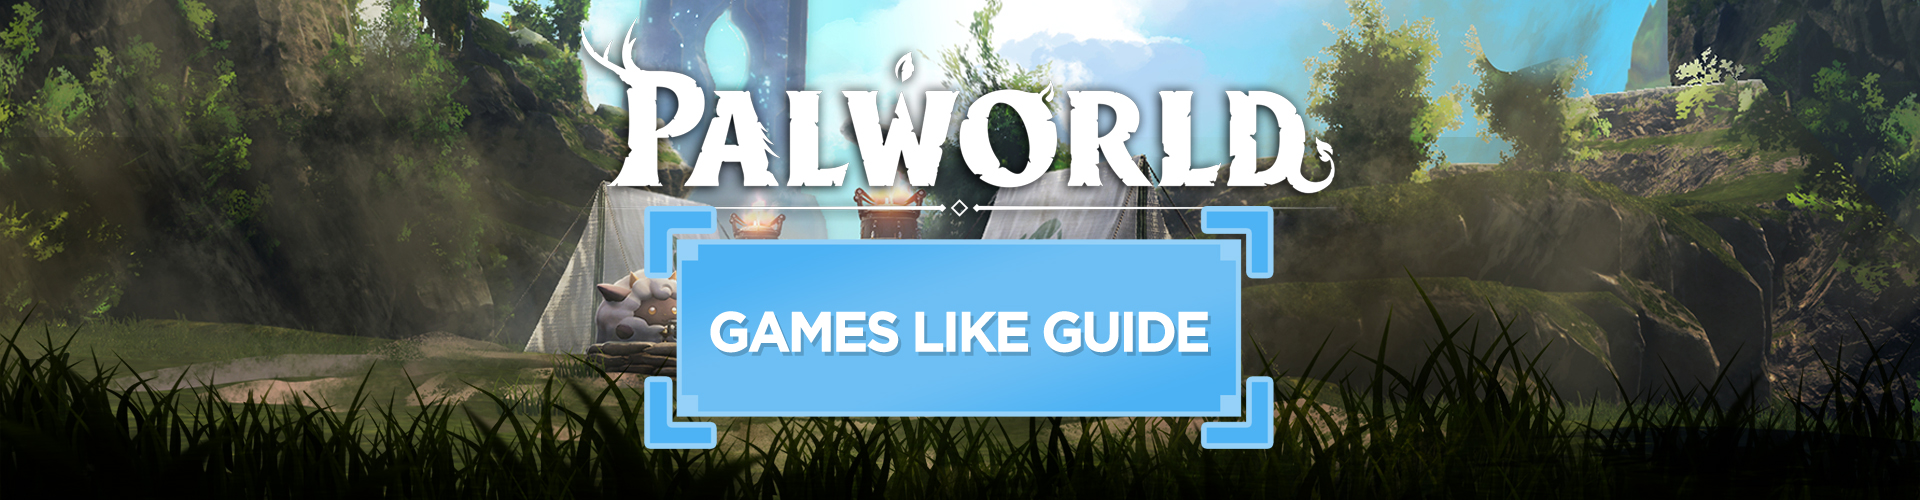 Top 10 Juegos Como Palworld